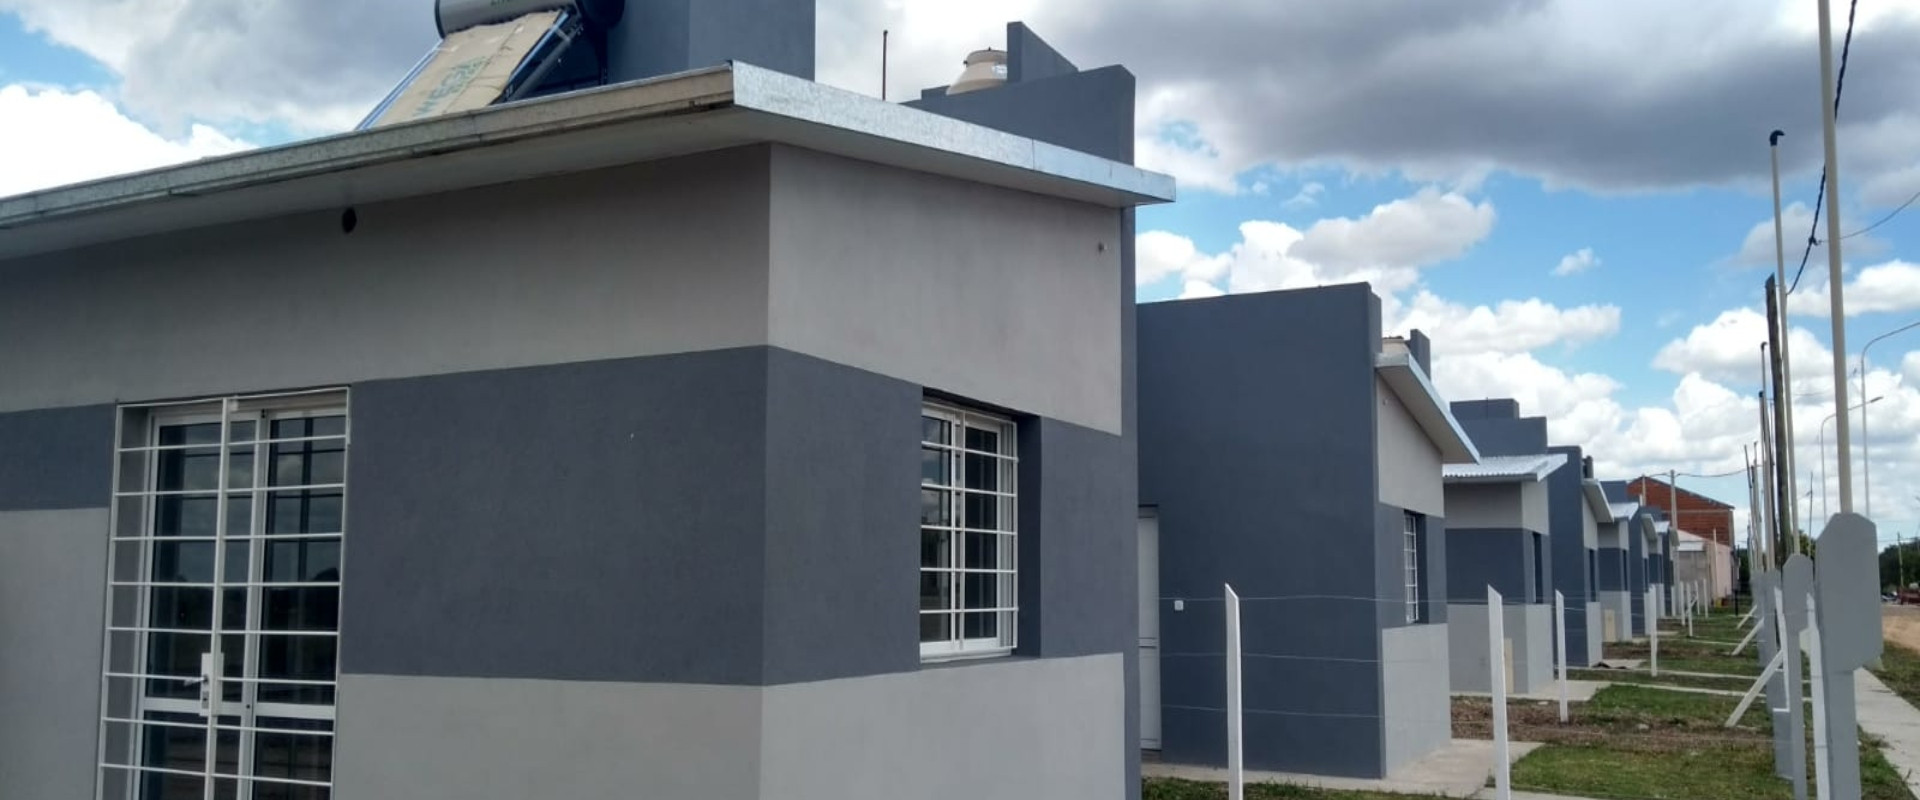 Nuevas viviendas se licitan en Gualeguaychú y El Cimarrón con recursos provinciales